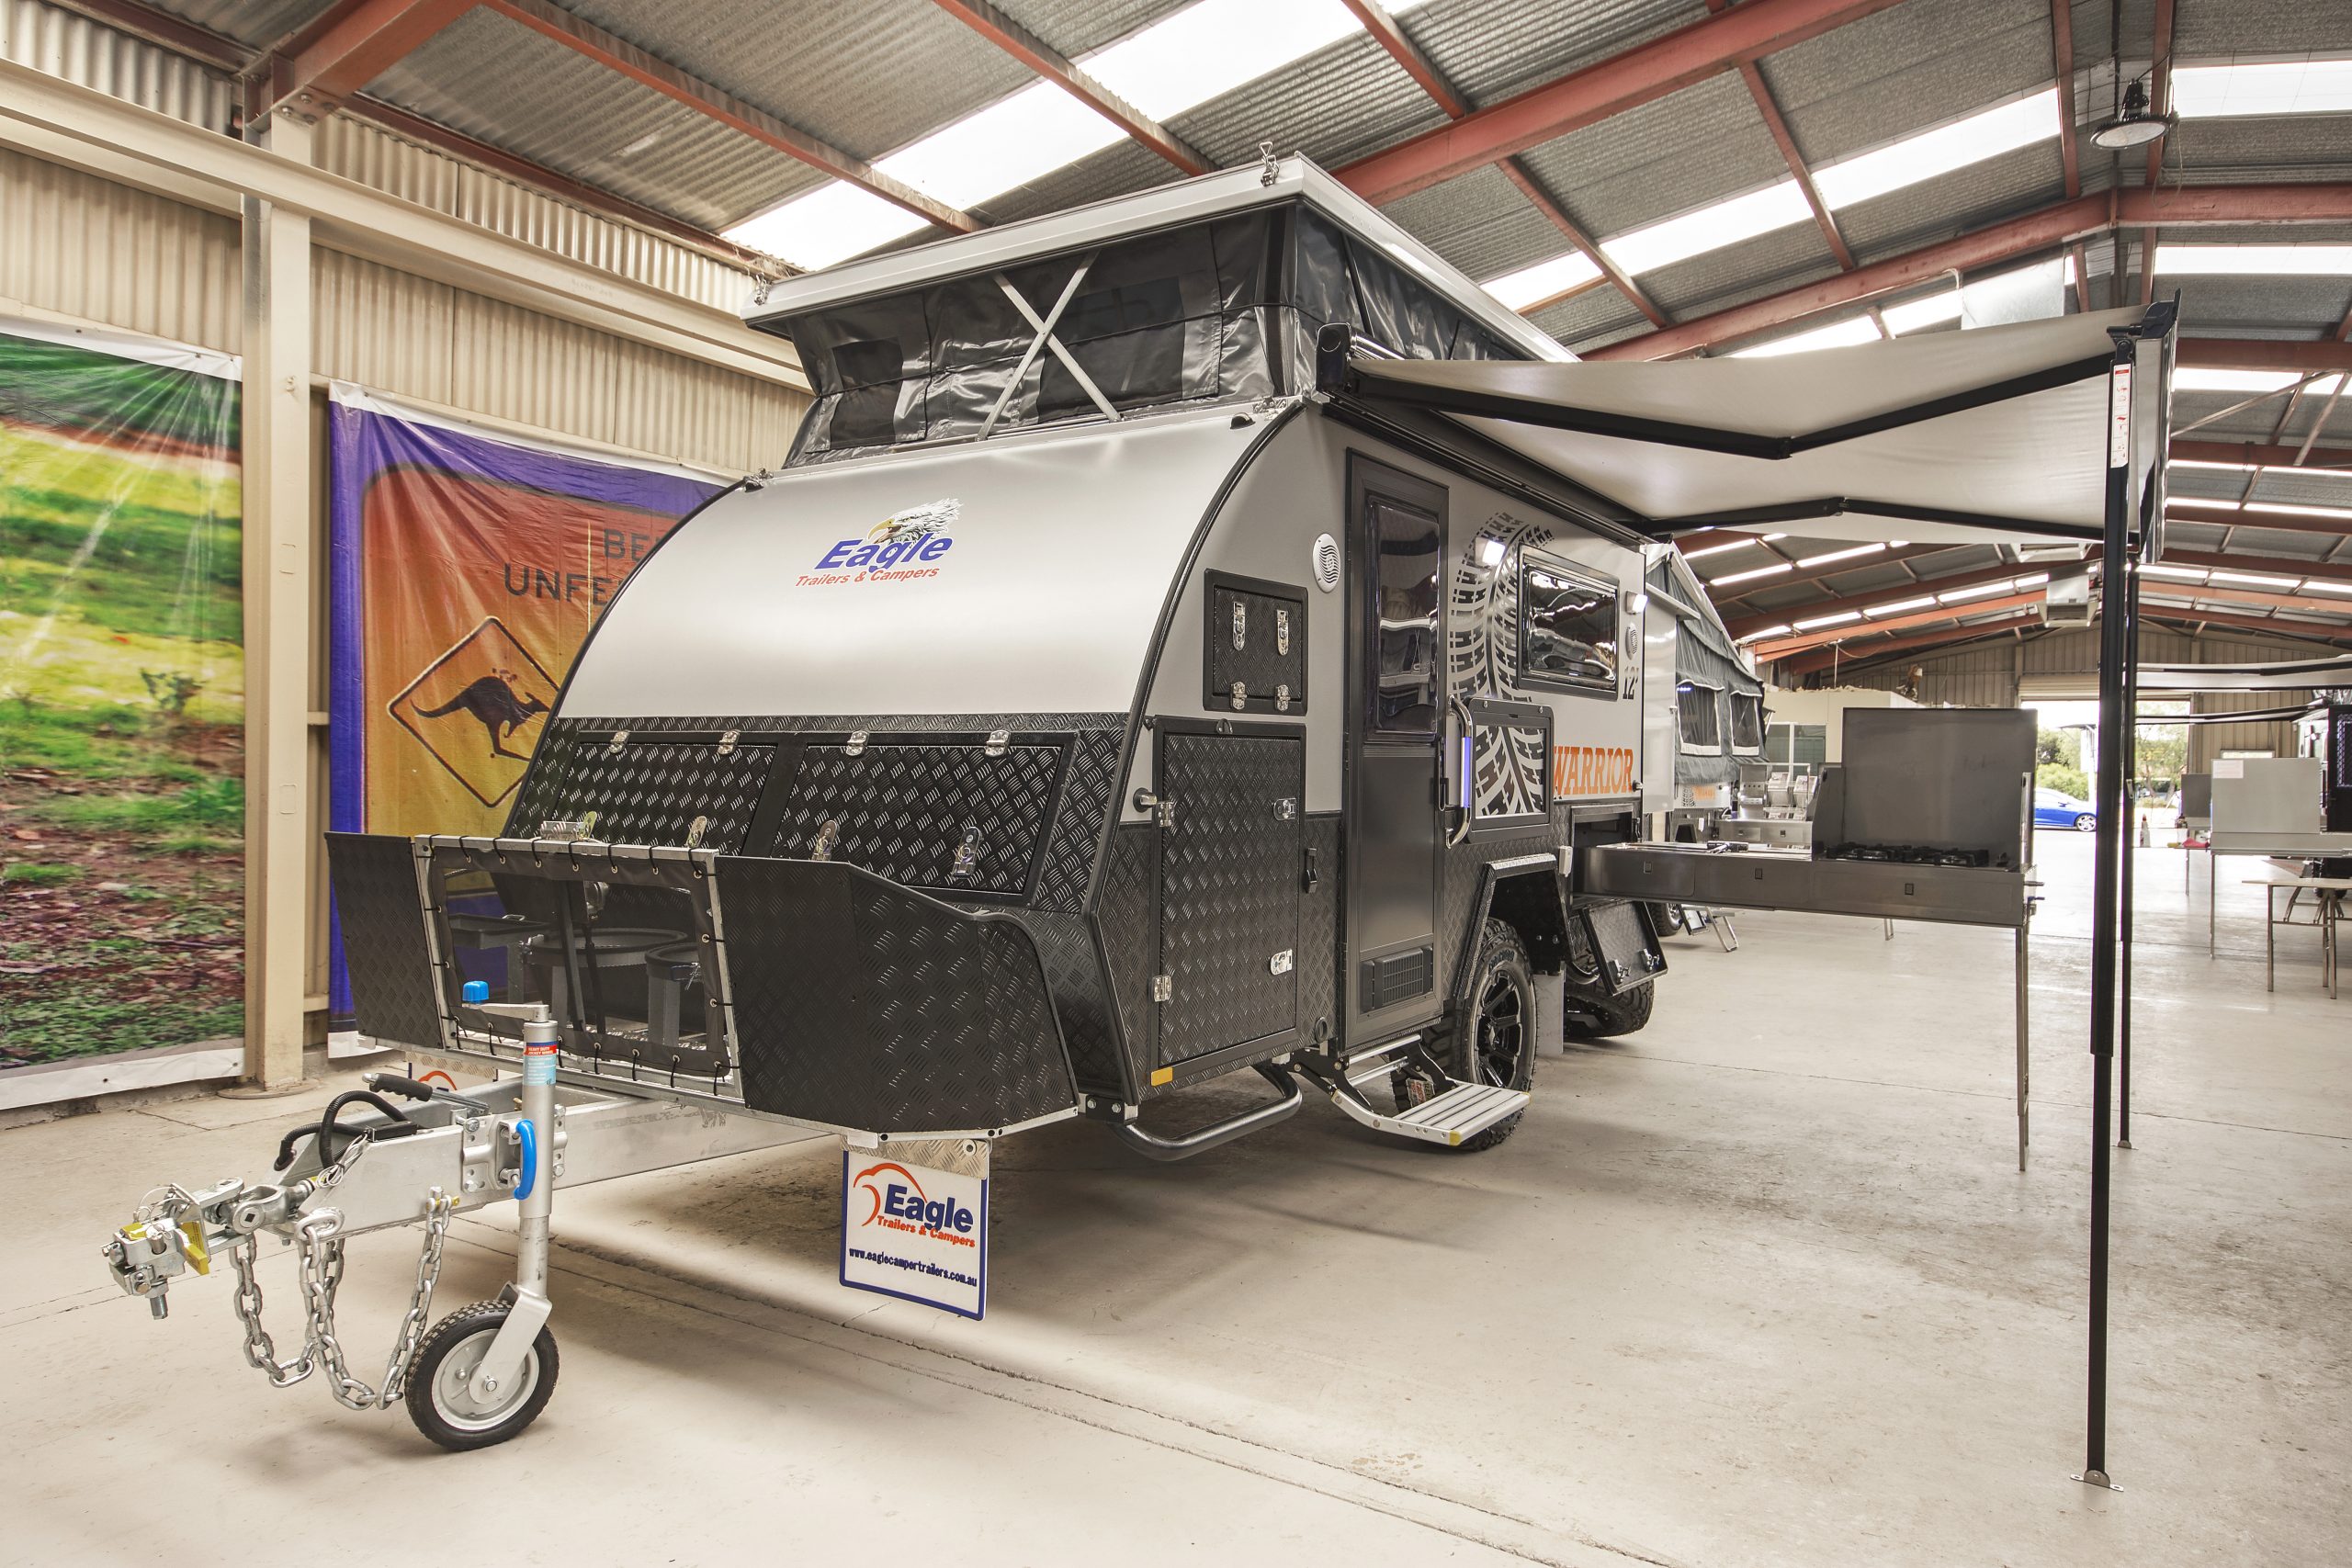 Details 98+ about hybrid caravans australia hot NEC